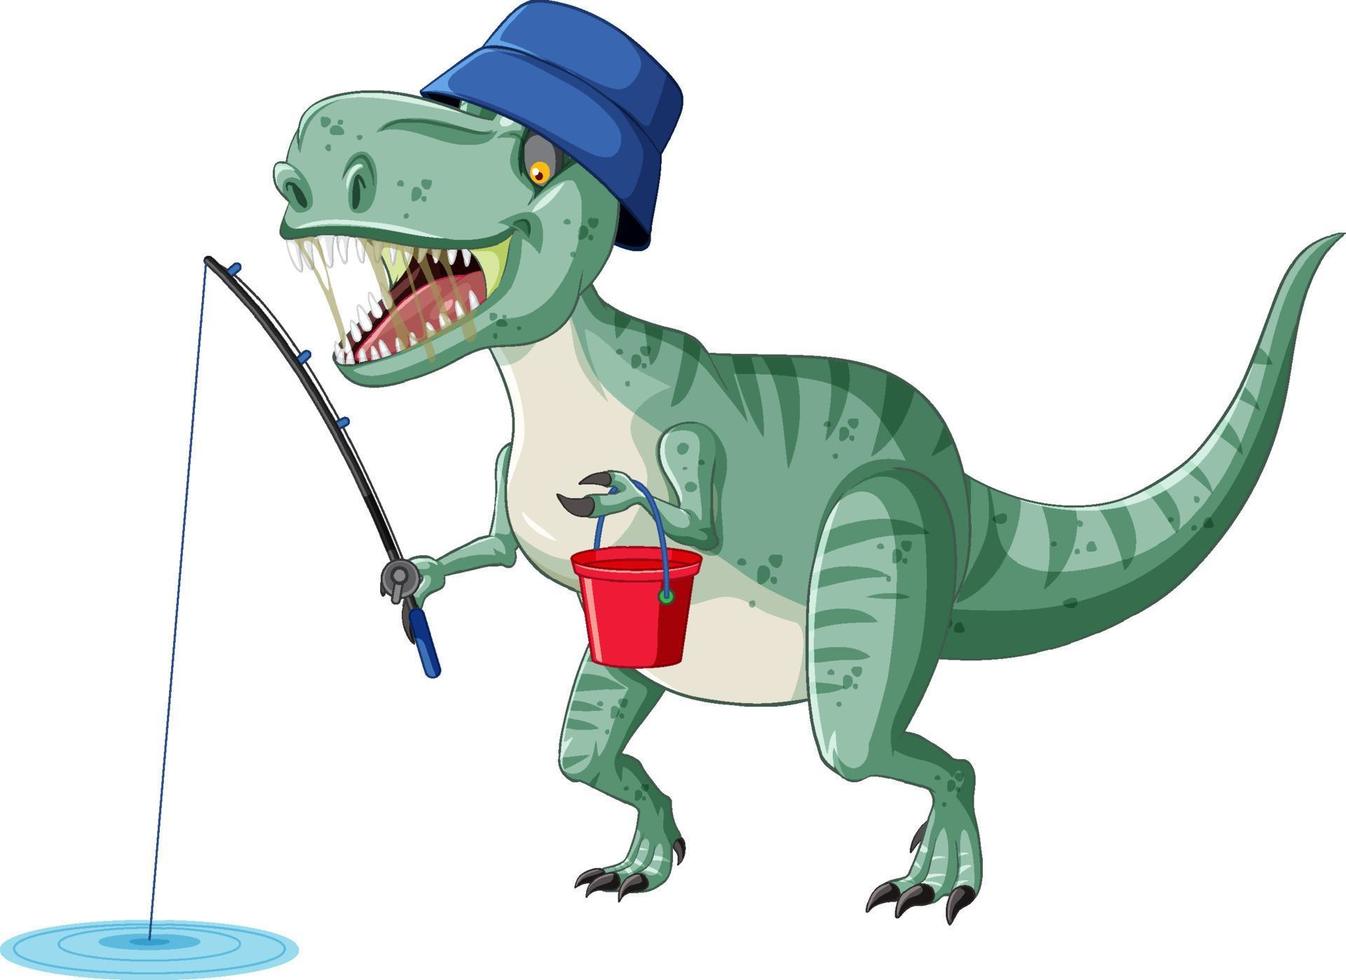 Tyrannosaurus rex dinosaur fishing in cartoon style vector